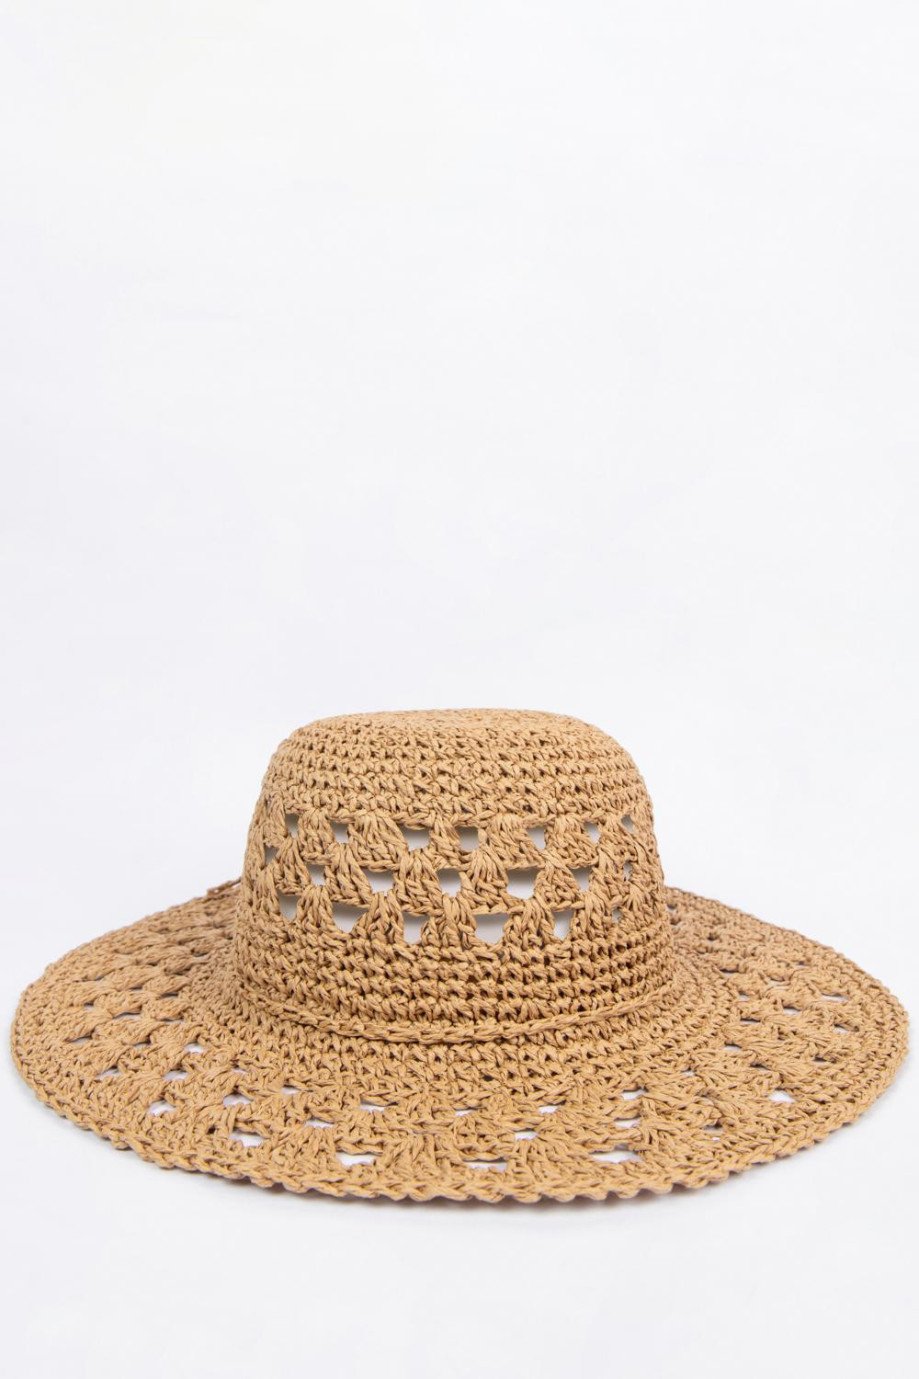 Sombrero kaky claro con ala ancha plana y cinta delgada decorativa